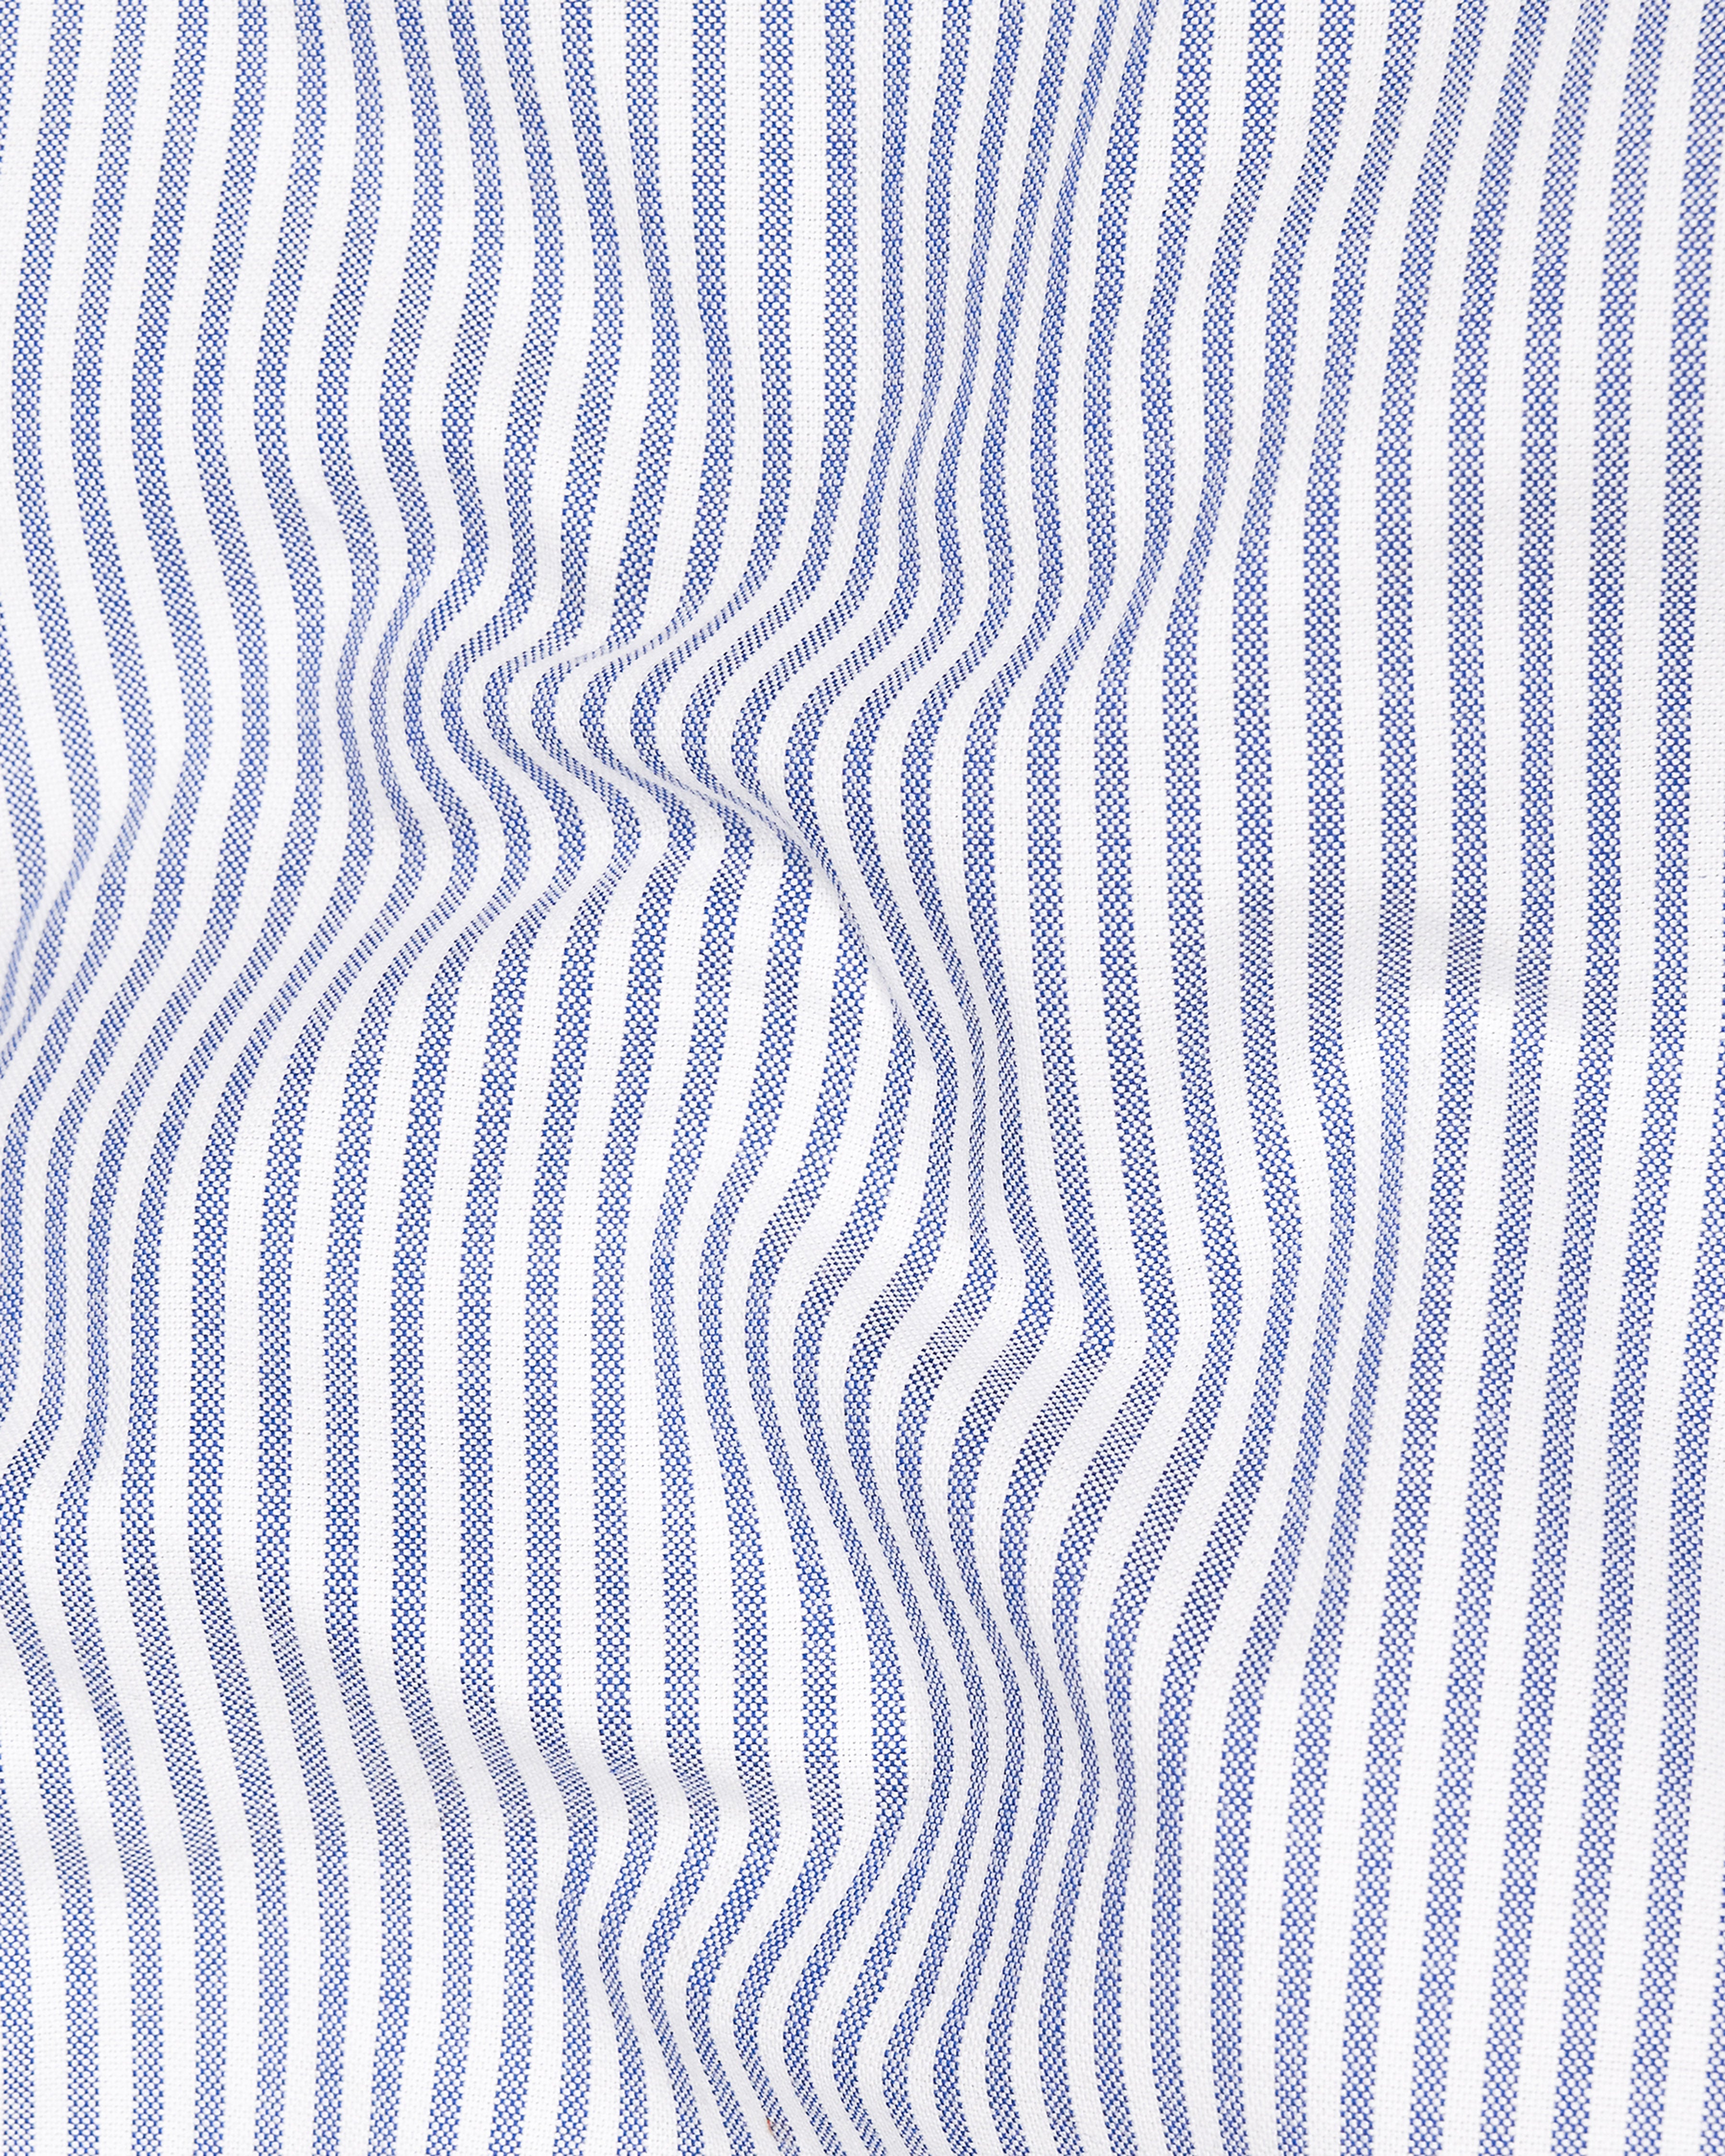 Bright White with Casper Blue Striped Royal Oxford Shirt 9450-CP-38, 9450-CP-H-38, 9450-CP-39, 9450-CP-H-39, 9450-CP-40, 9450-CP-H-40, 9450-CP-42, 9450-CP-H-42, 9450-CP-44, 9450-CP-H-44, 9450-CP-46, 9450-CP-H-46, 9450-CP-48, 9450-CP-H-48, 9450-CP-50, 9450-CP-H-50, 9450-CP-52, 9450-CP-H-52